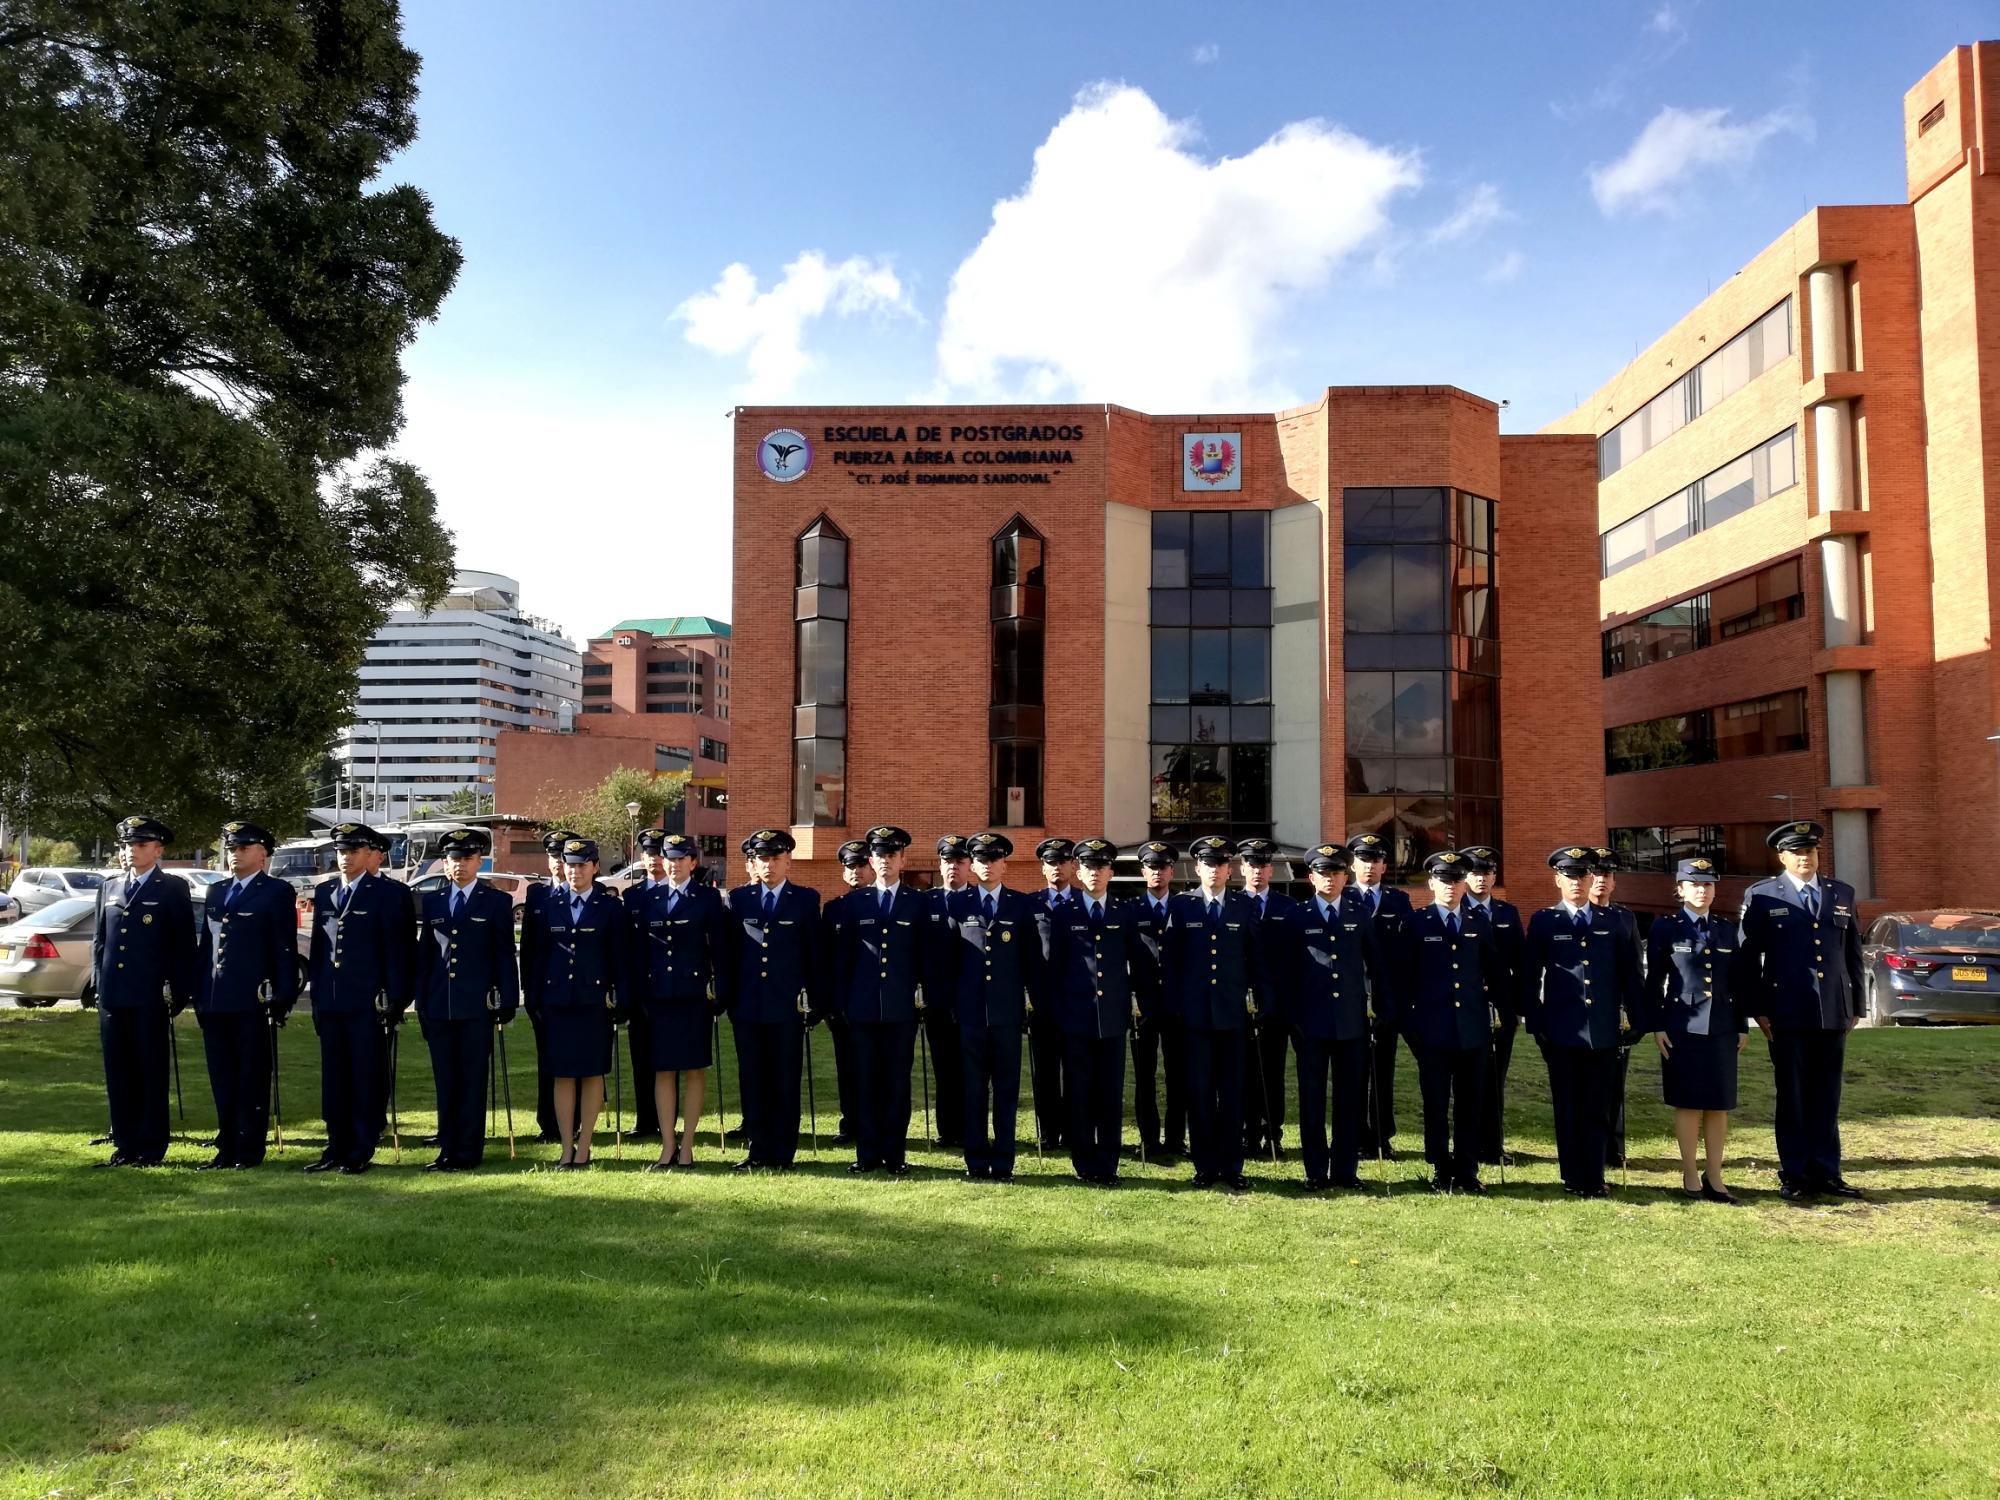 Escola de Pós-Graduação da Força Aérea Colombiana